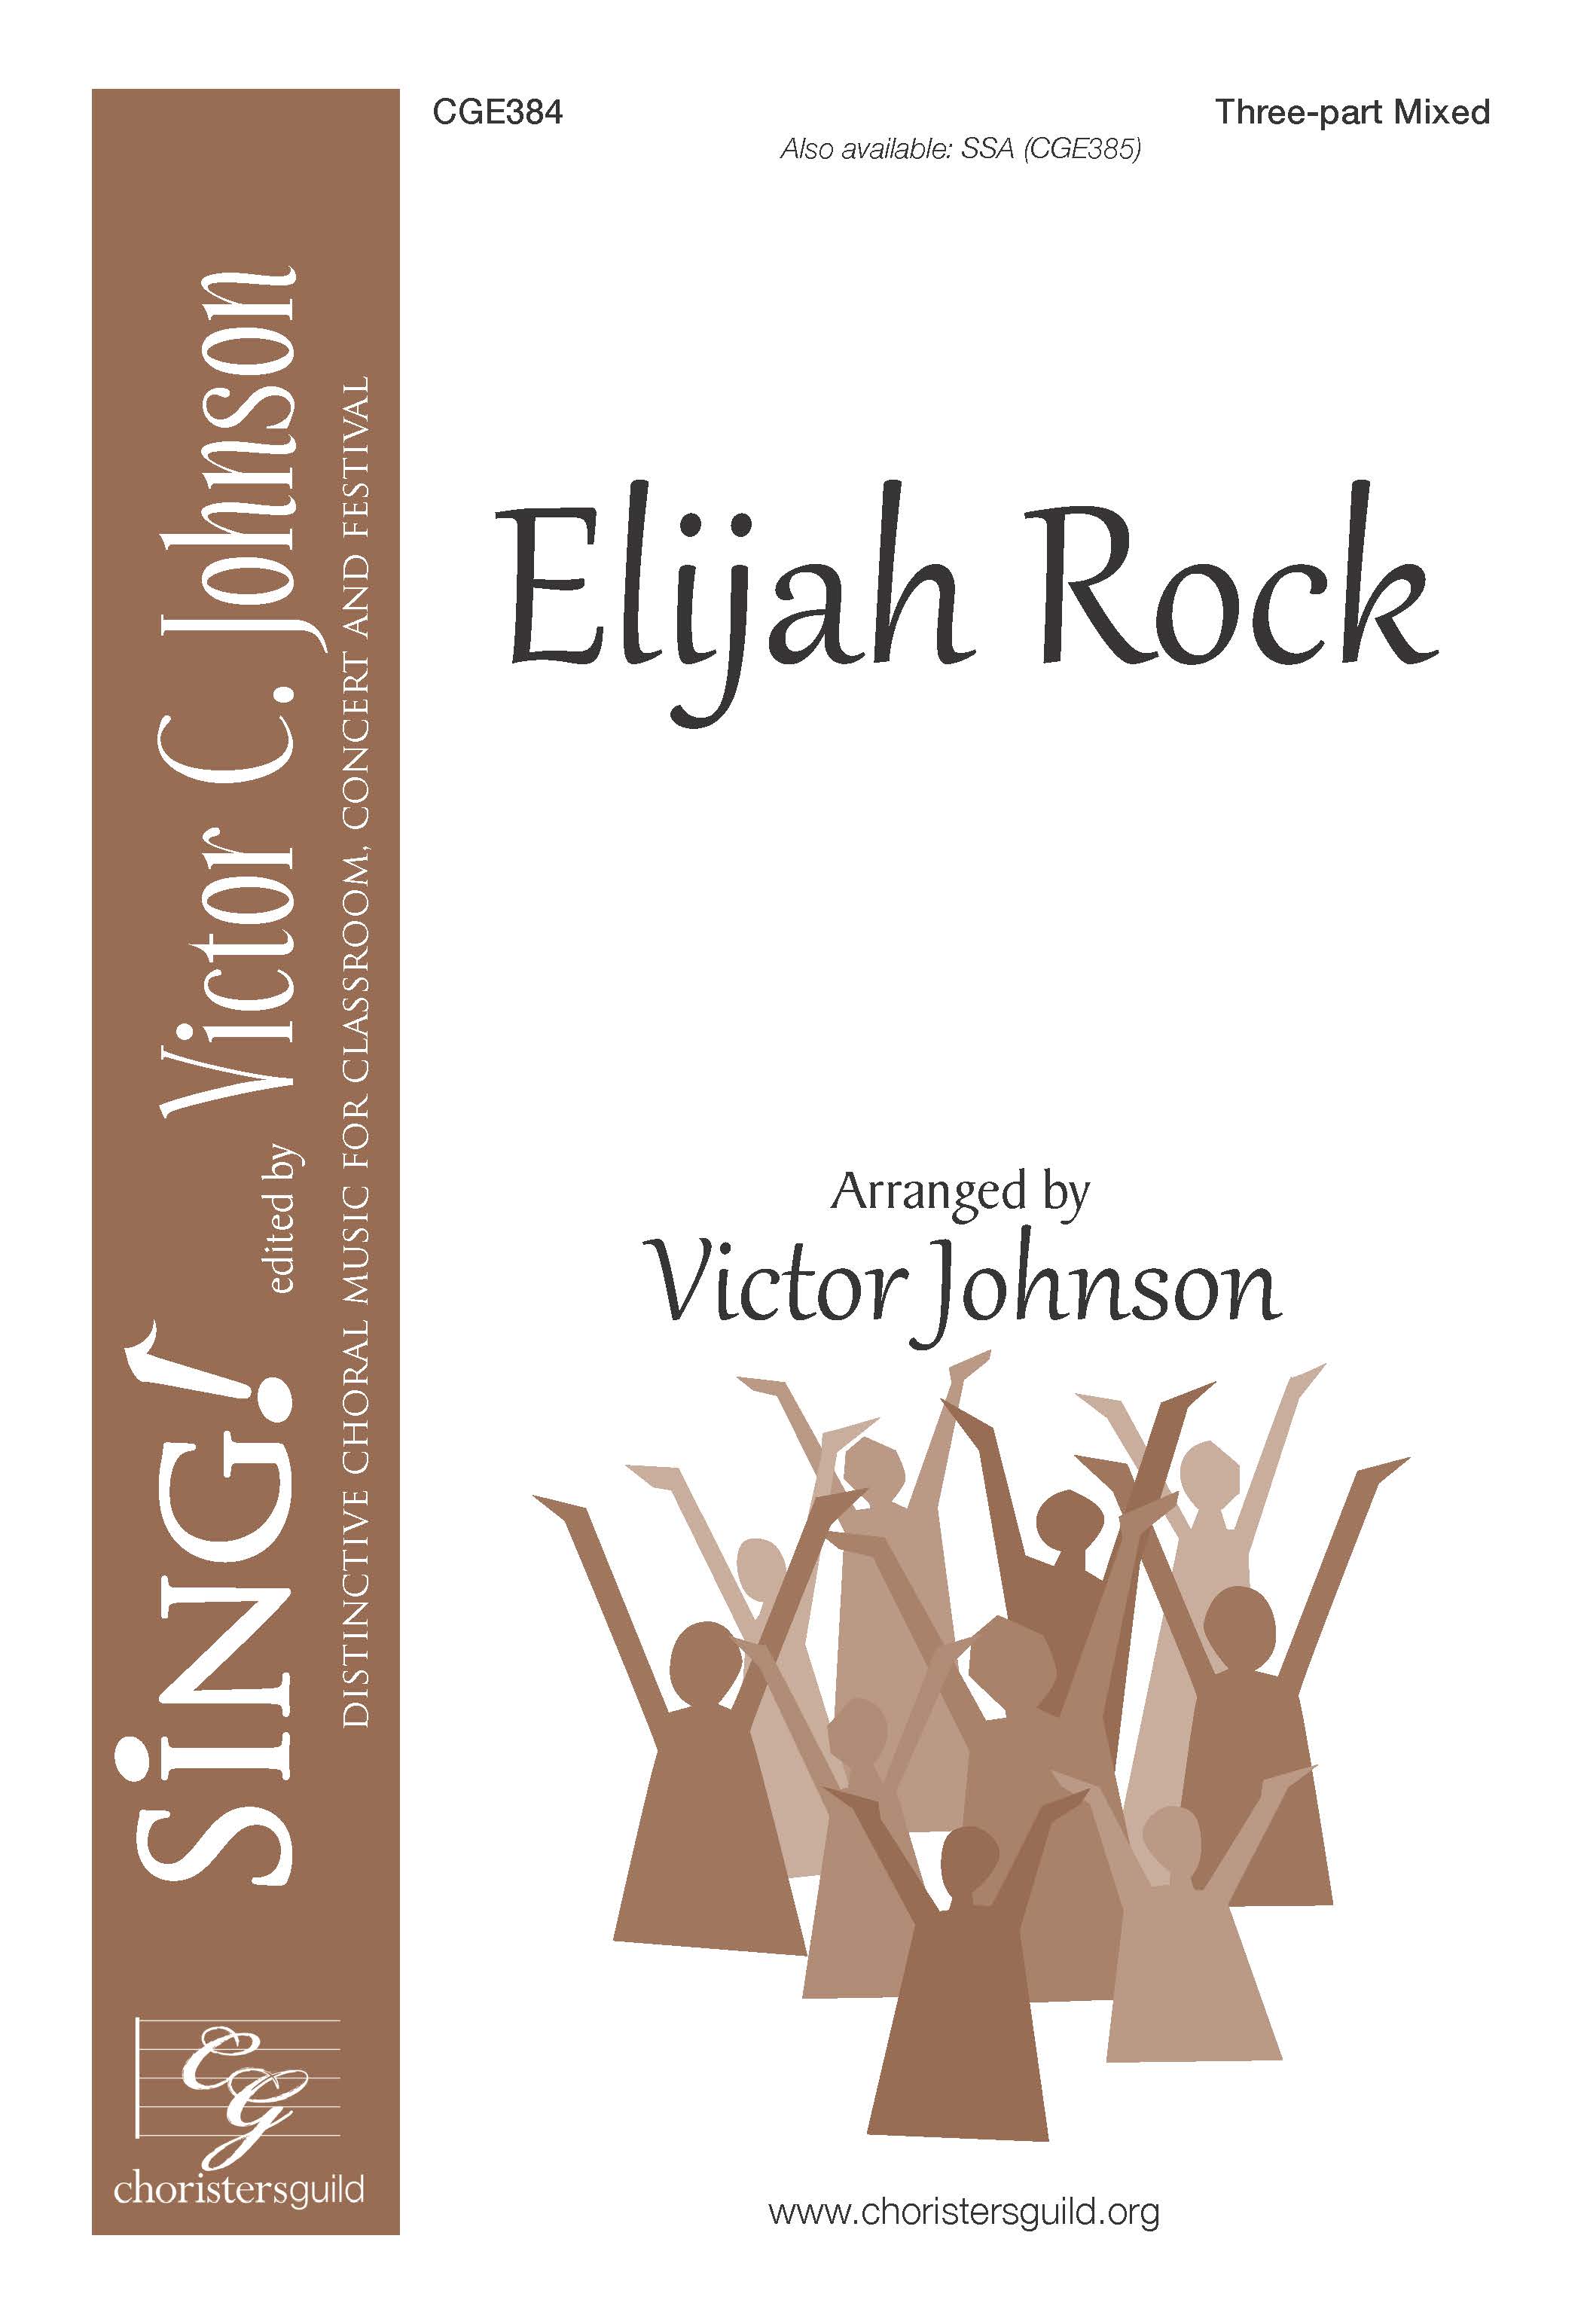 Elijah Rock - Three-part Mixed a cappella